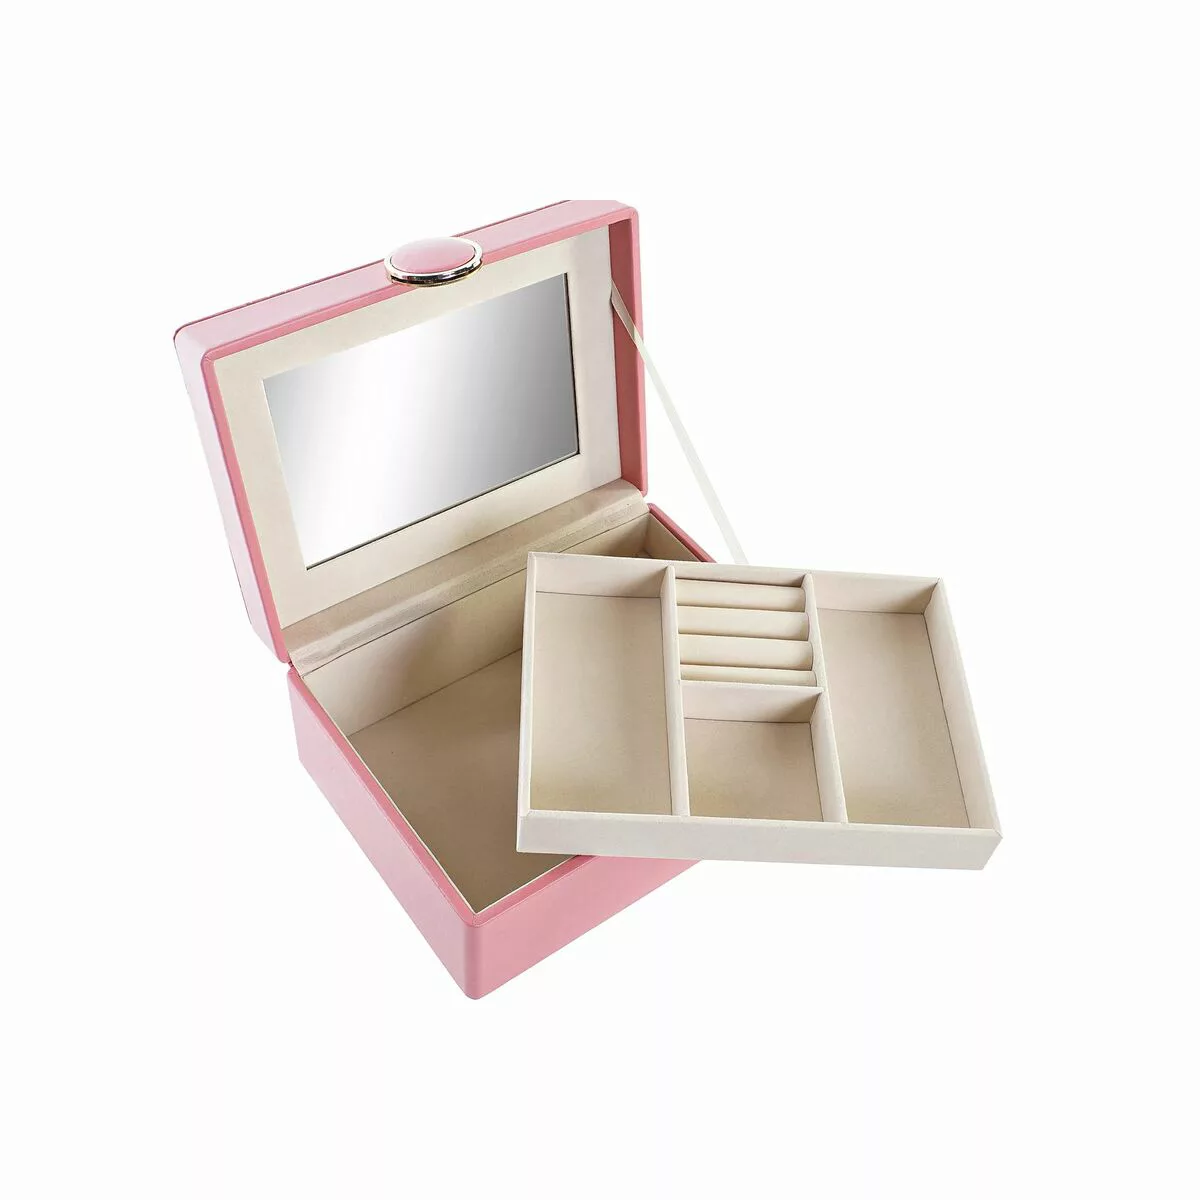 Box-schmuckkästchen Dkd Home Decor Rosa Pu Holz Mdf (17 X 13 X 8,5 Cm) günstig online kaufen